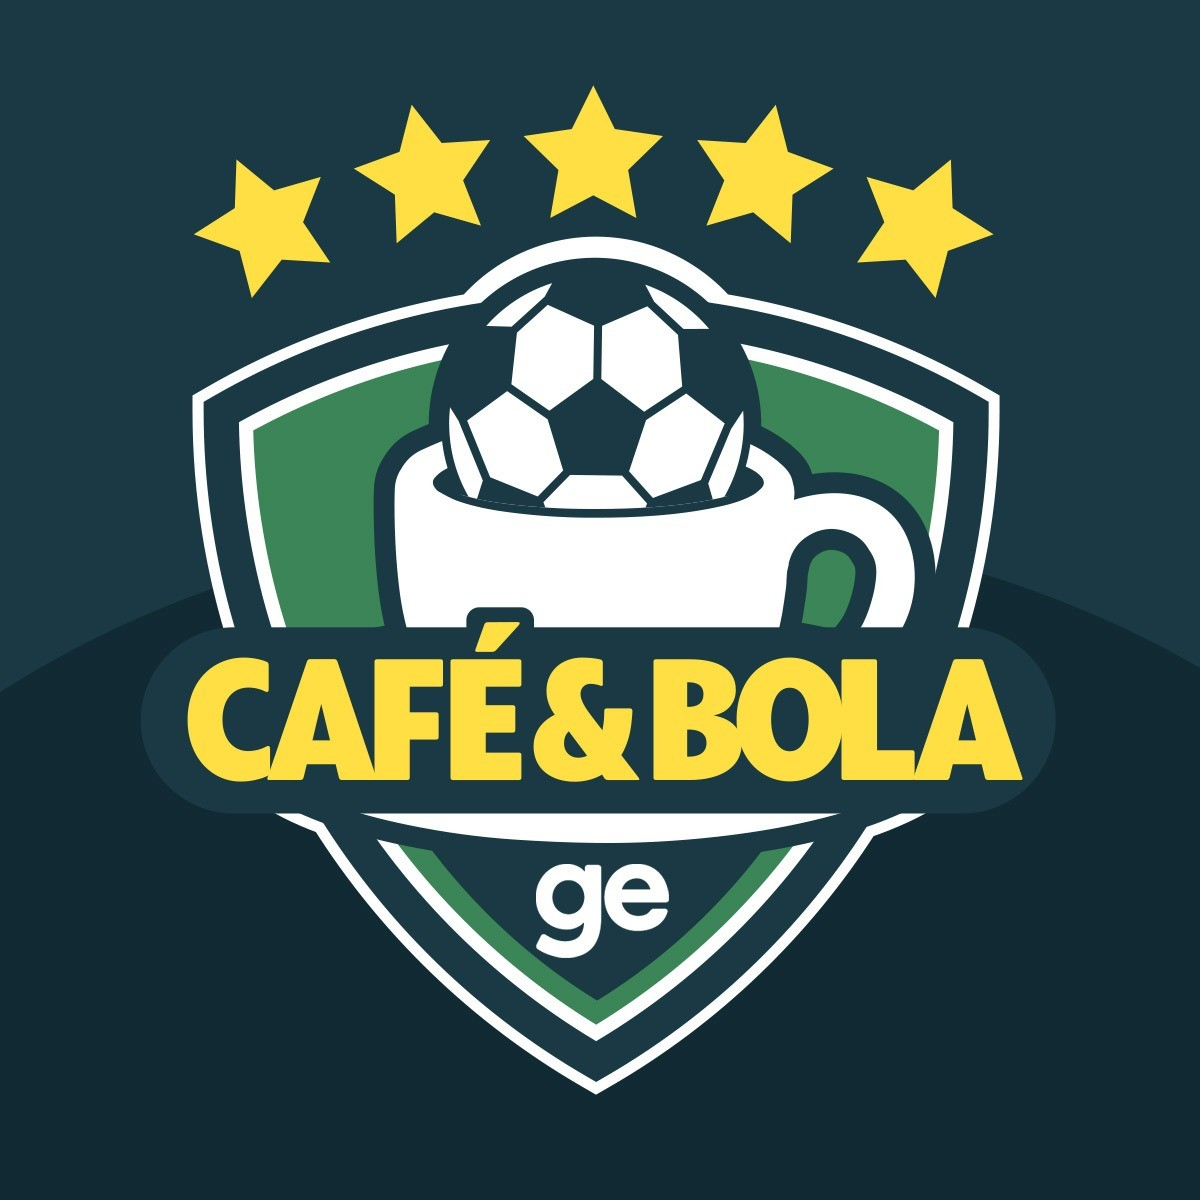 Café&Bola #45 - Flamengo chega a mais uma final e o Vasco segue perdendo fora de casa